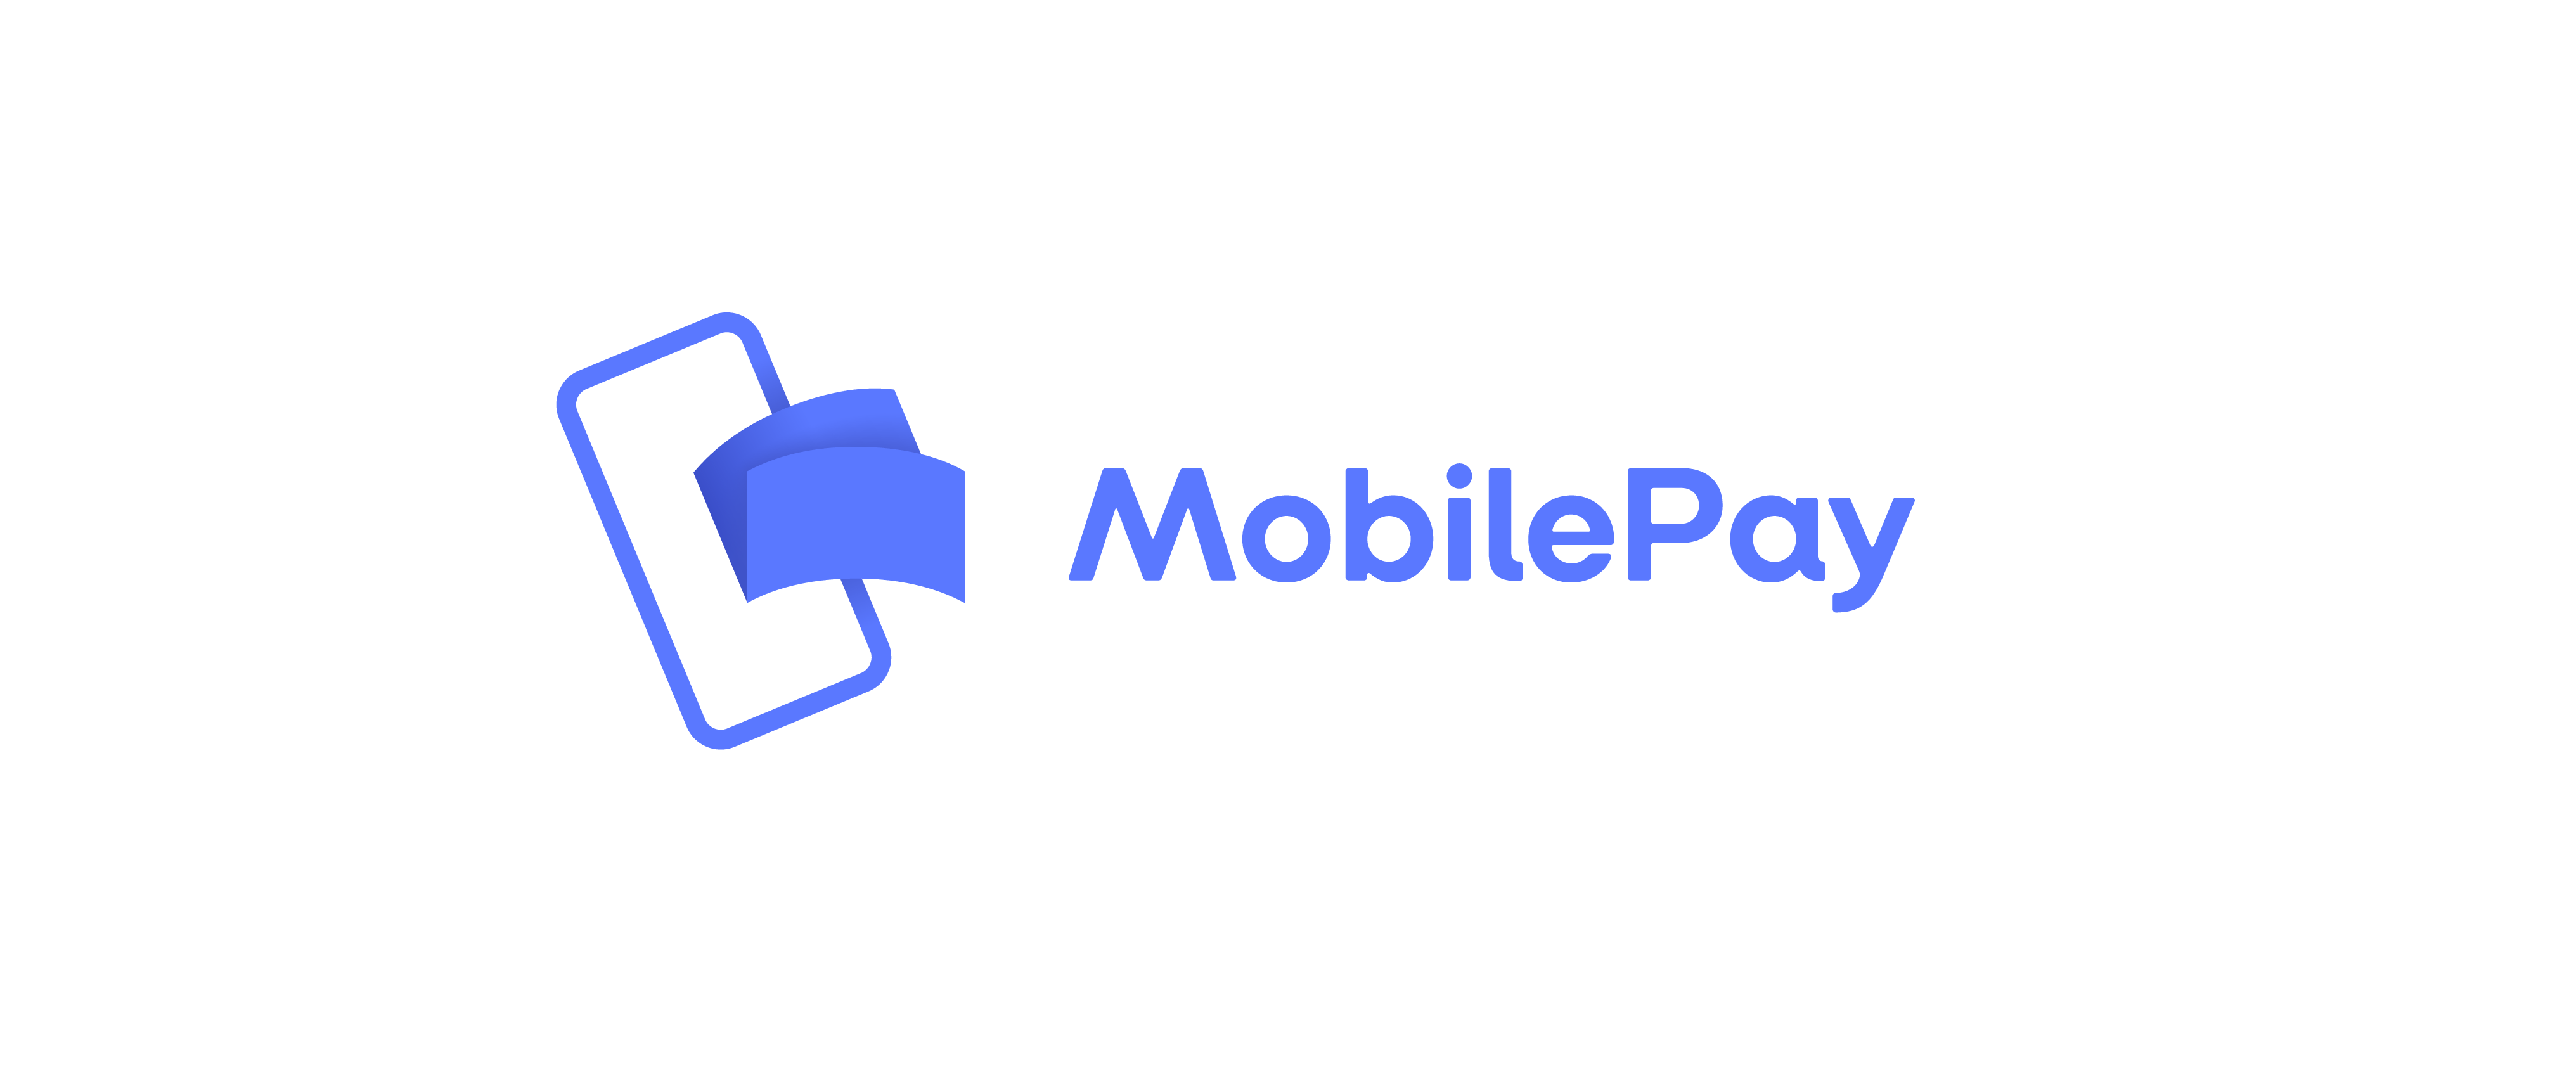 Betal nemt og hurtigt med Mobilen